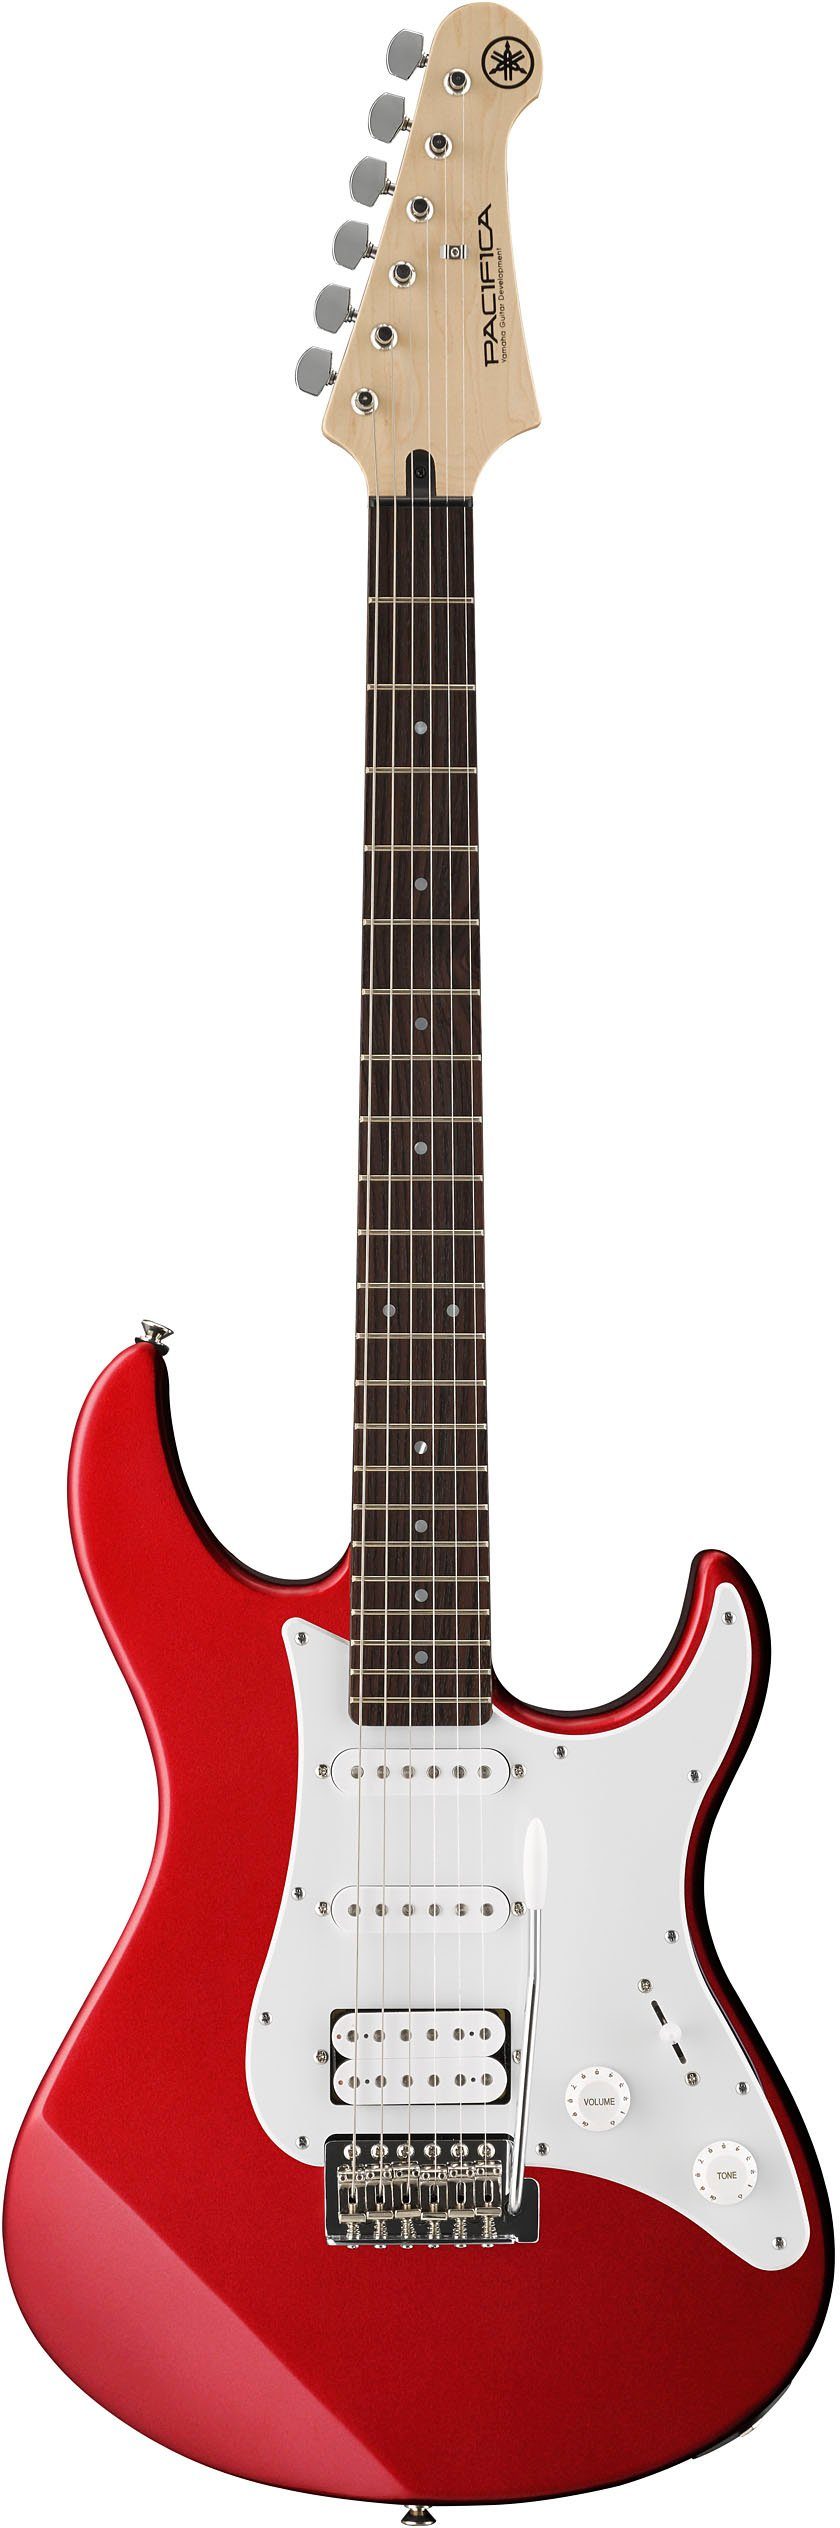 Yamaha E-Gitarre Pacifica, PA012RMIIFRA, red metallic, inklusive  Fretello-Schritt-für-Schritt-Gitarren-App